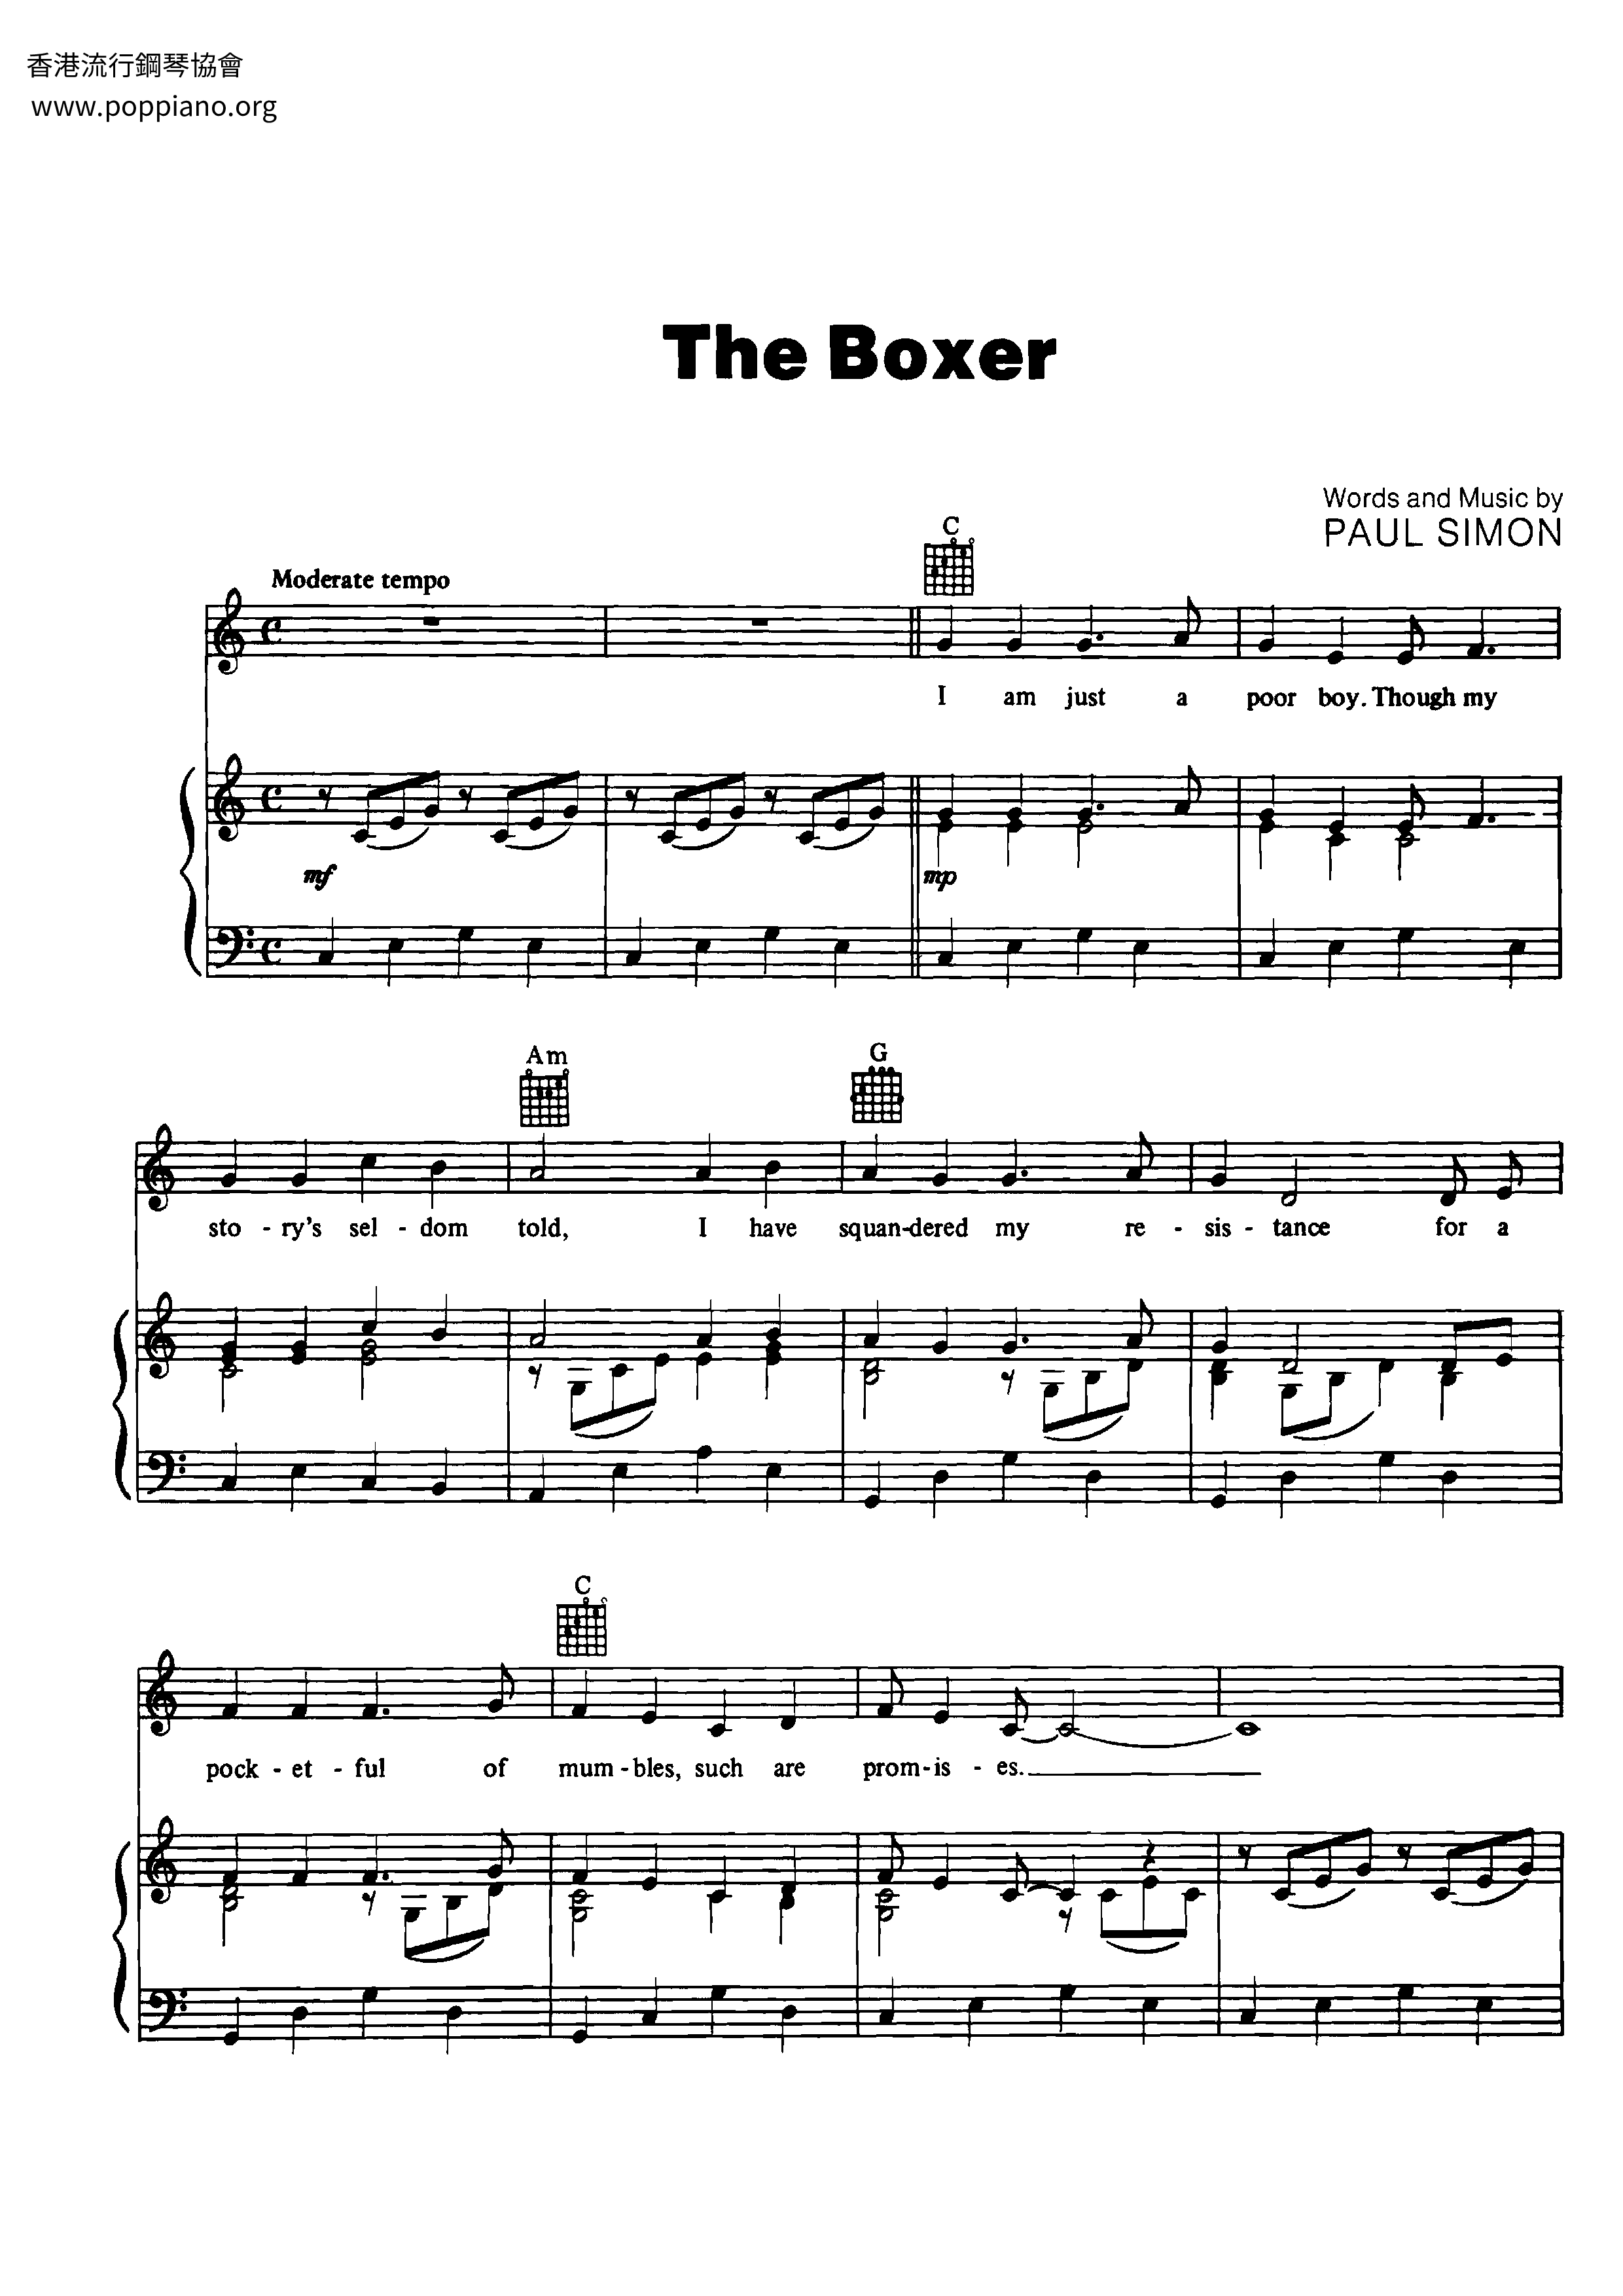 The Boxer Score